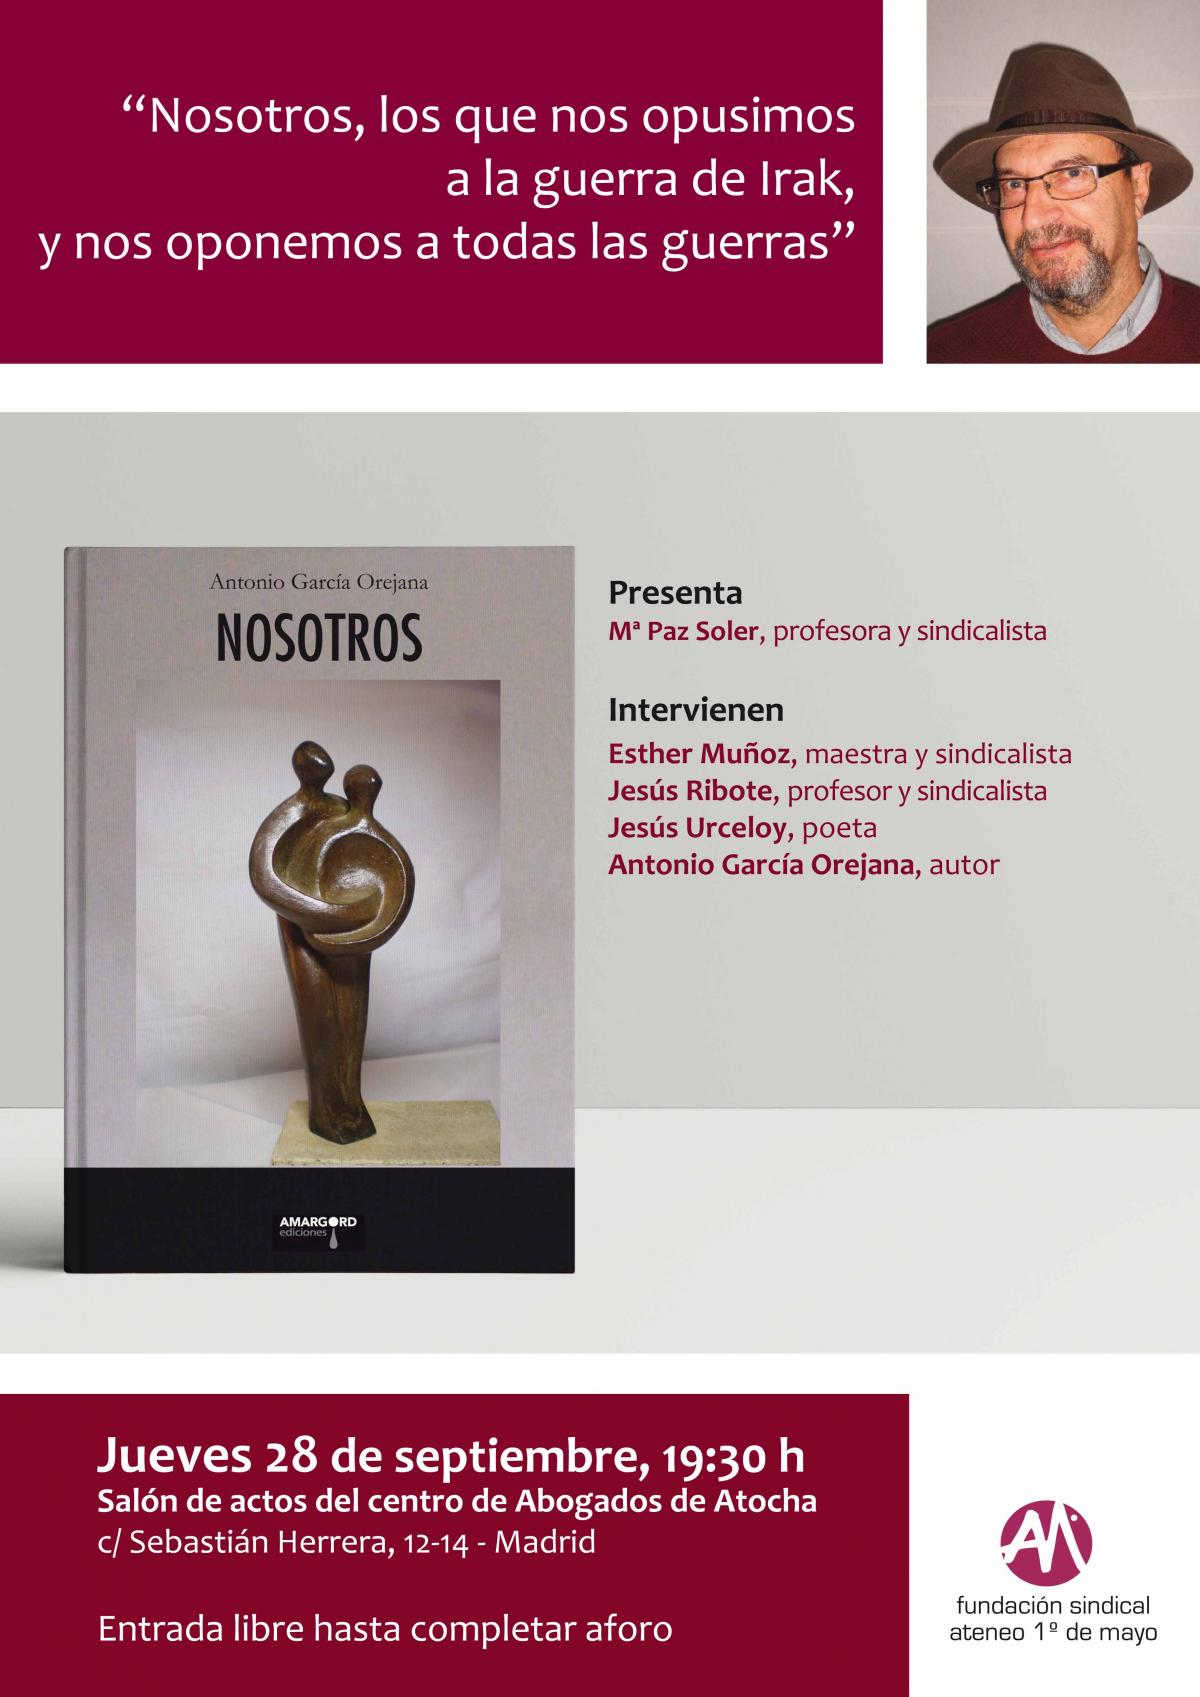 Presentación del libro "Nosotros", de A. García Orejana